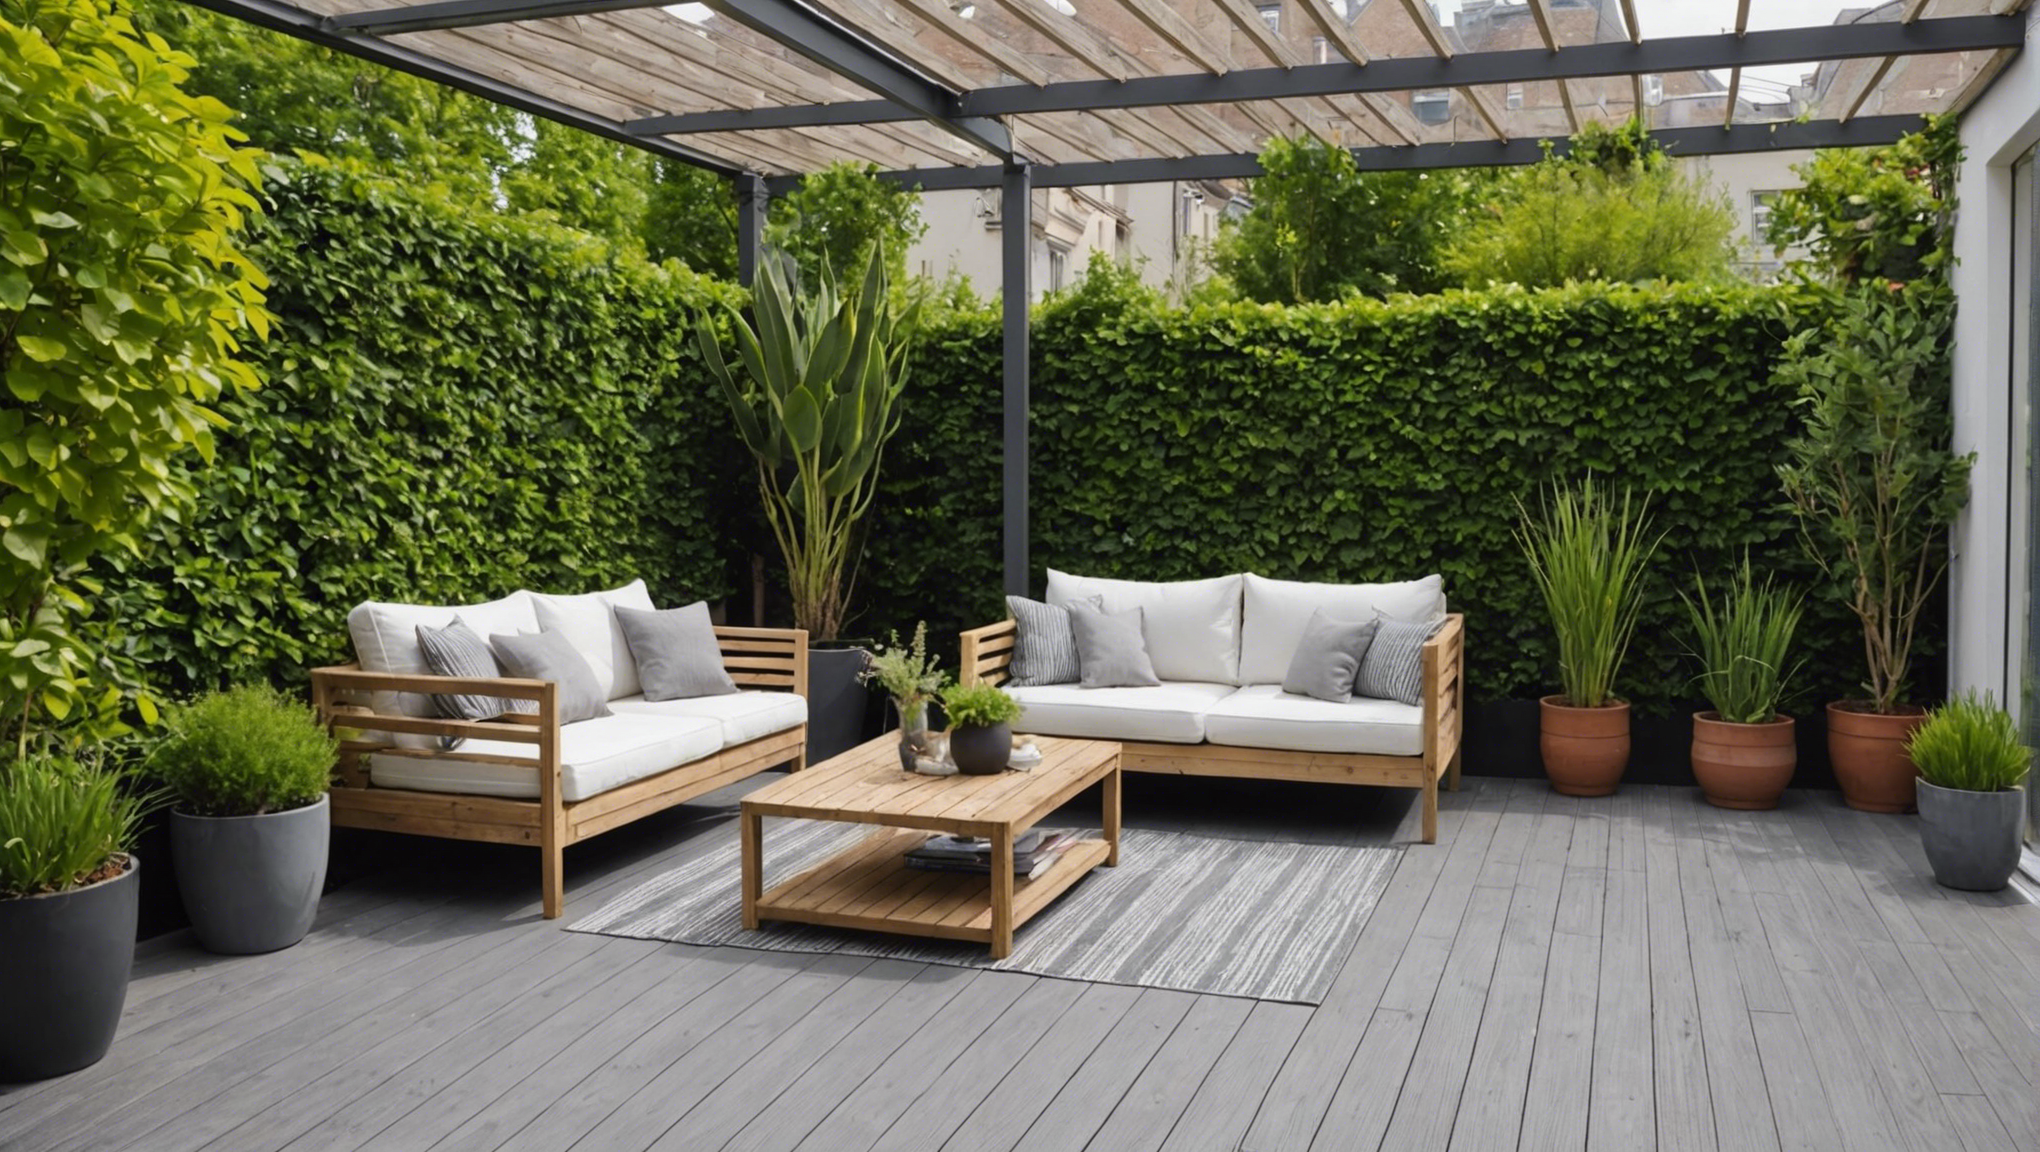 découvrez comment choisir les matériaux nobles adéquats pour embellir votre terrasse et créer un espace extérieur unique et élégant.